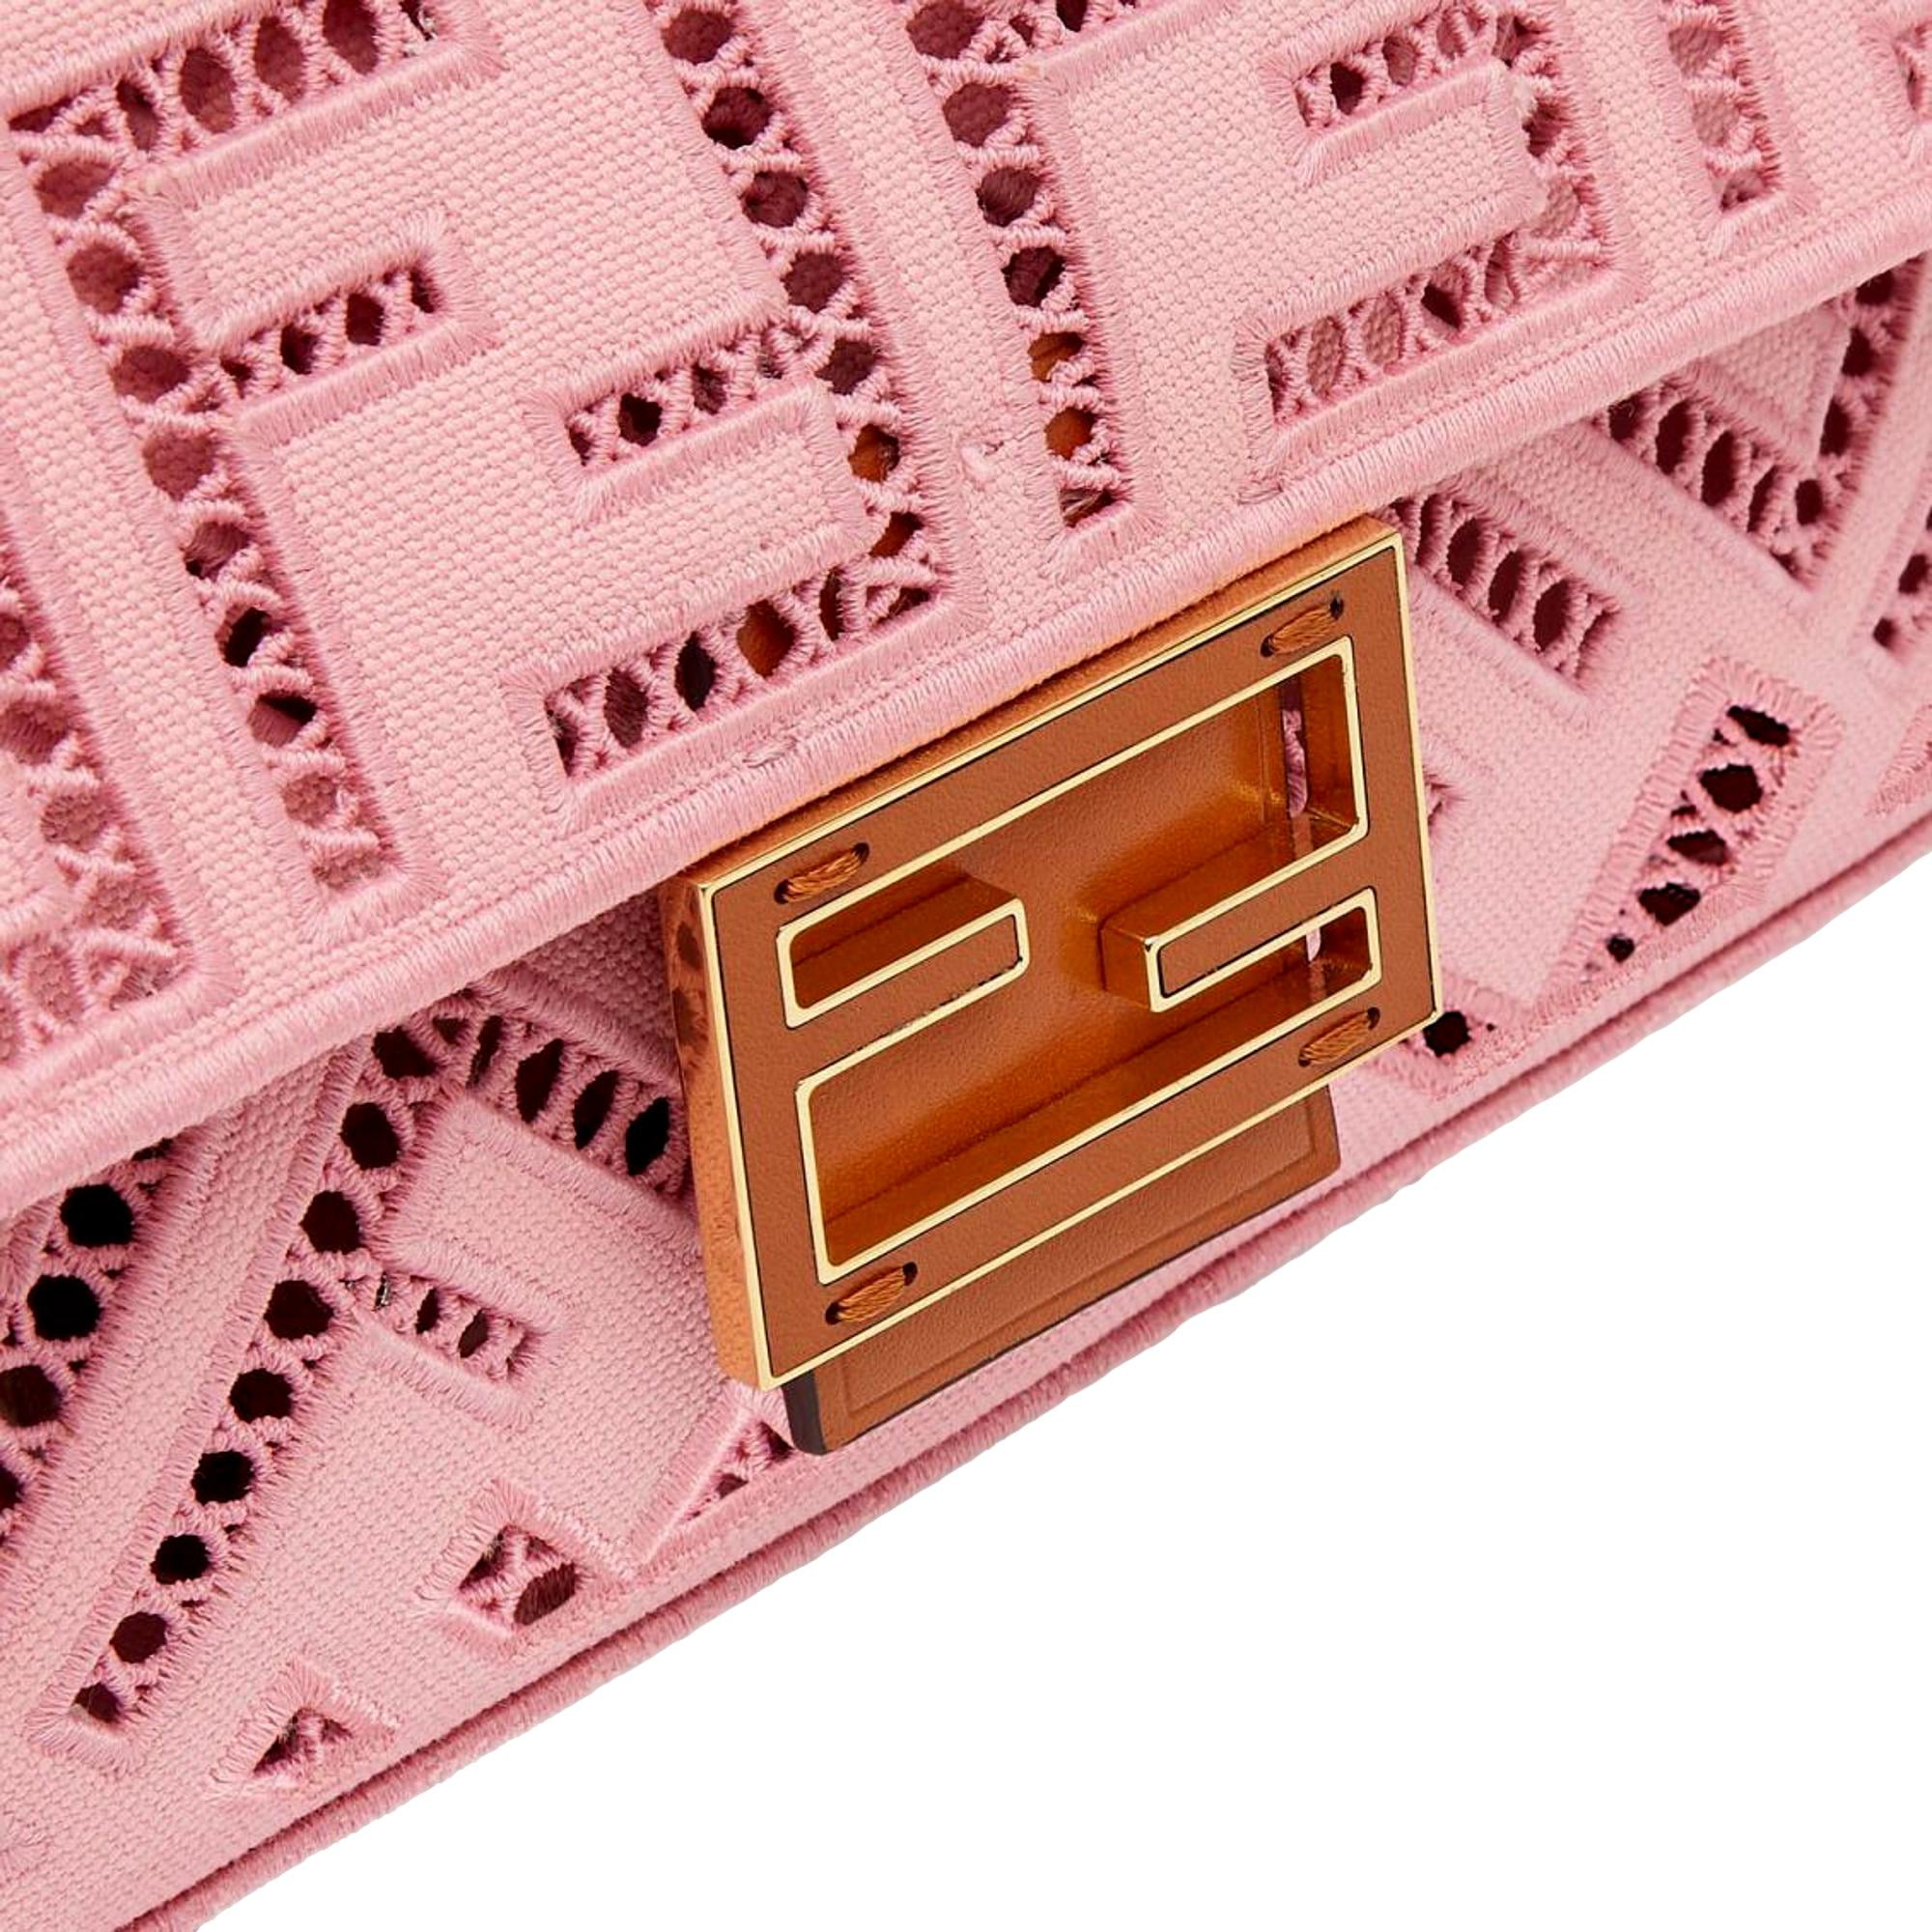 Fendi Baguette NM Embroidered FF Pink Canvas Shoulder Bag – DAC